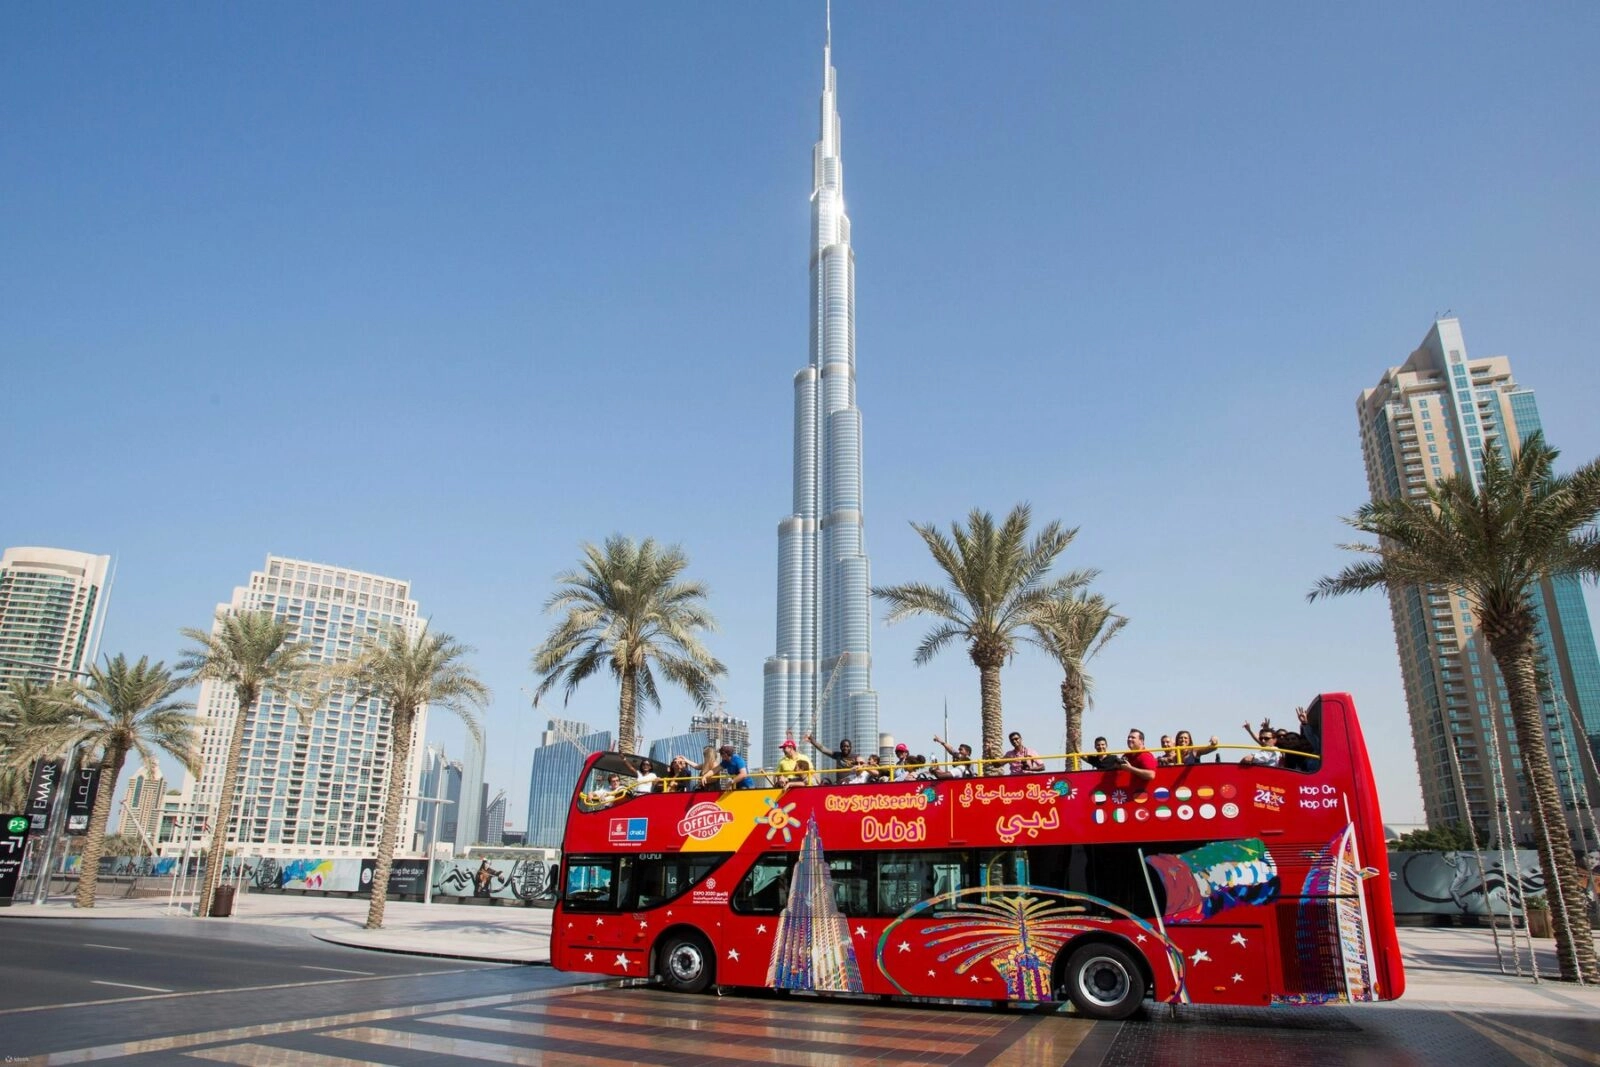 ТОП-4 обзорных экскурсий на автобусах по Дубаю